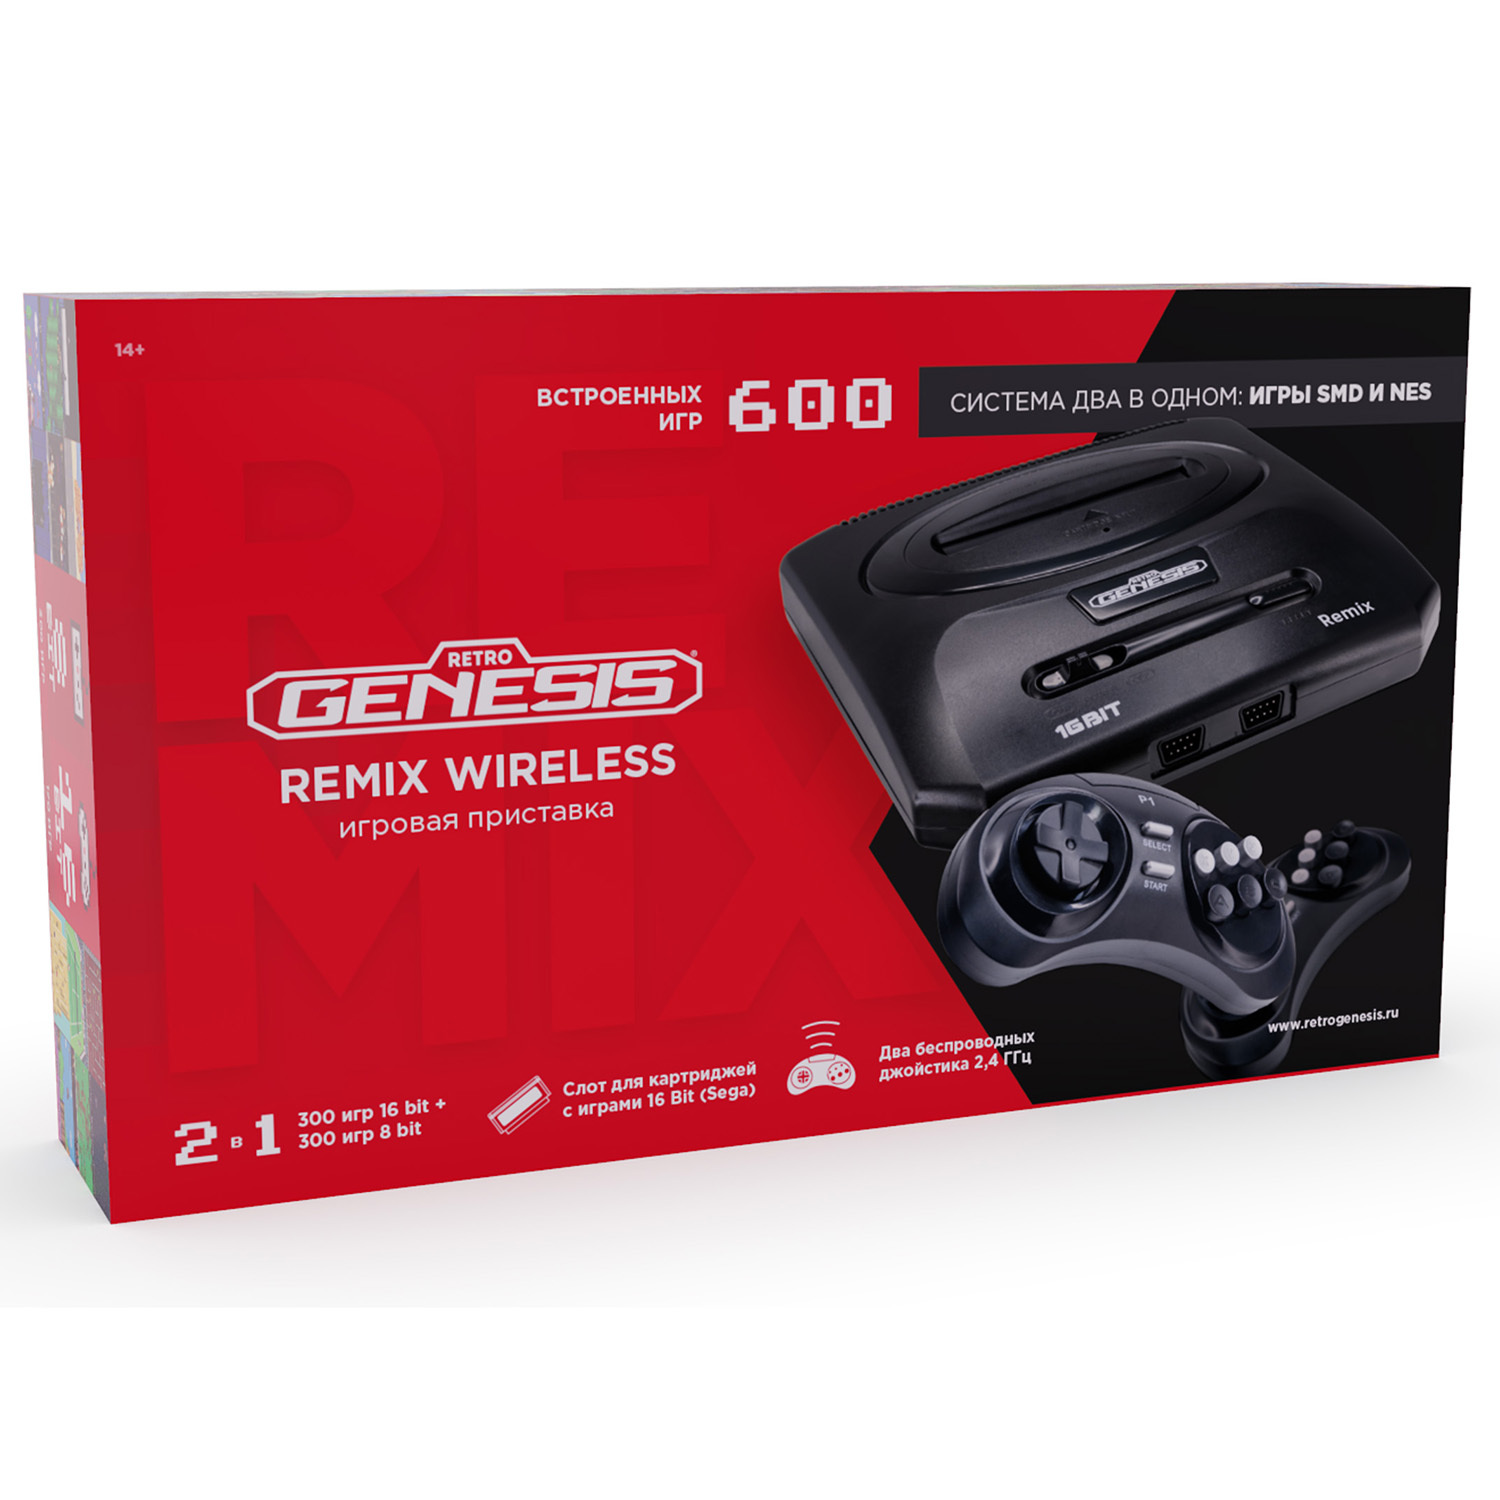 Генезис 16 бит. Игровая приставка Retro-Genesis Remix + 600 игр. Приставка Genesis Retro. Игровая консоль Retro Genesis Remix Wireless (8+16bit) провод. Игровая консоль Retro Genesis Remix Wireless (8+16bit) + 600 игр.